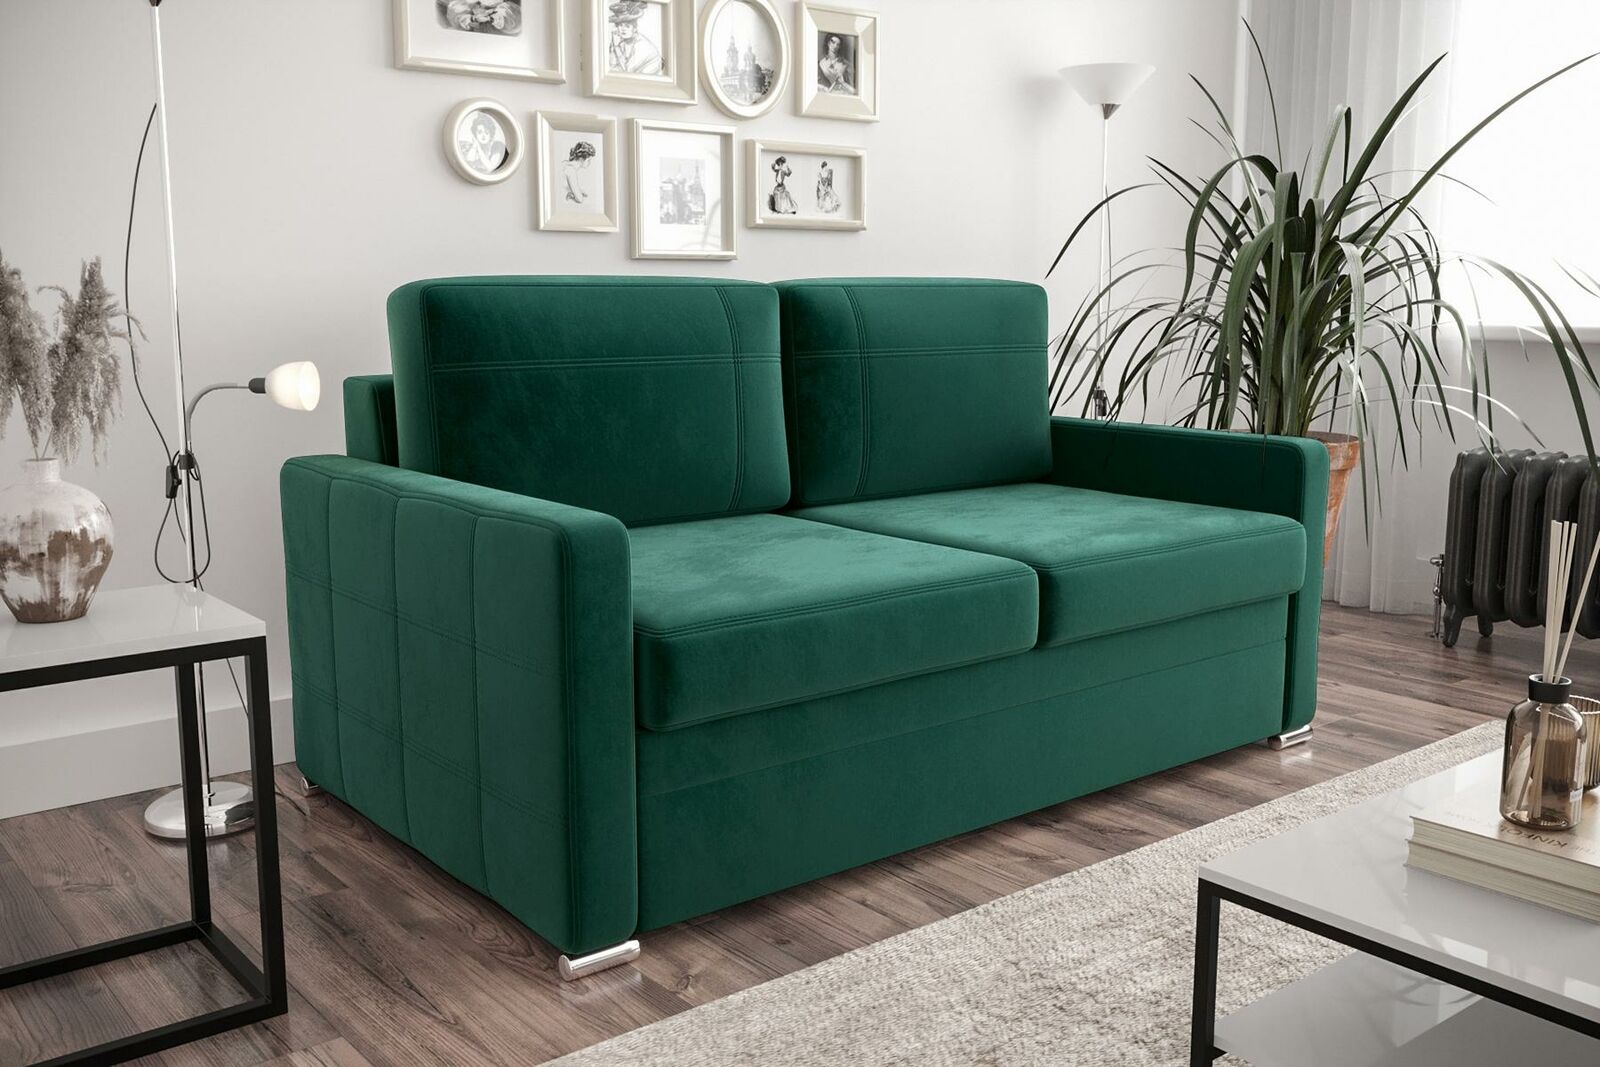 Design 2Sitz Sofa Couch Polster Zweisitzer Couchen Sofas Textil Stoff Kunstleder